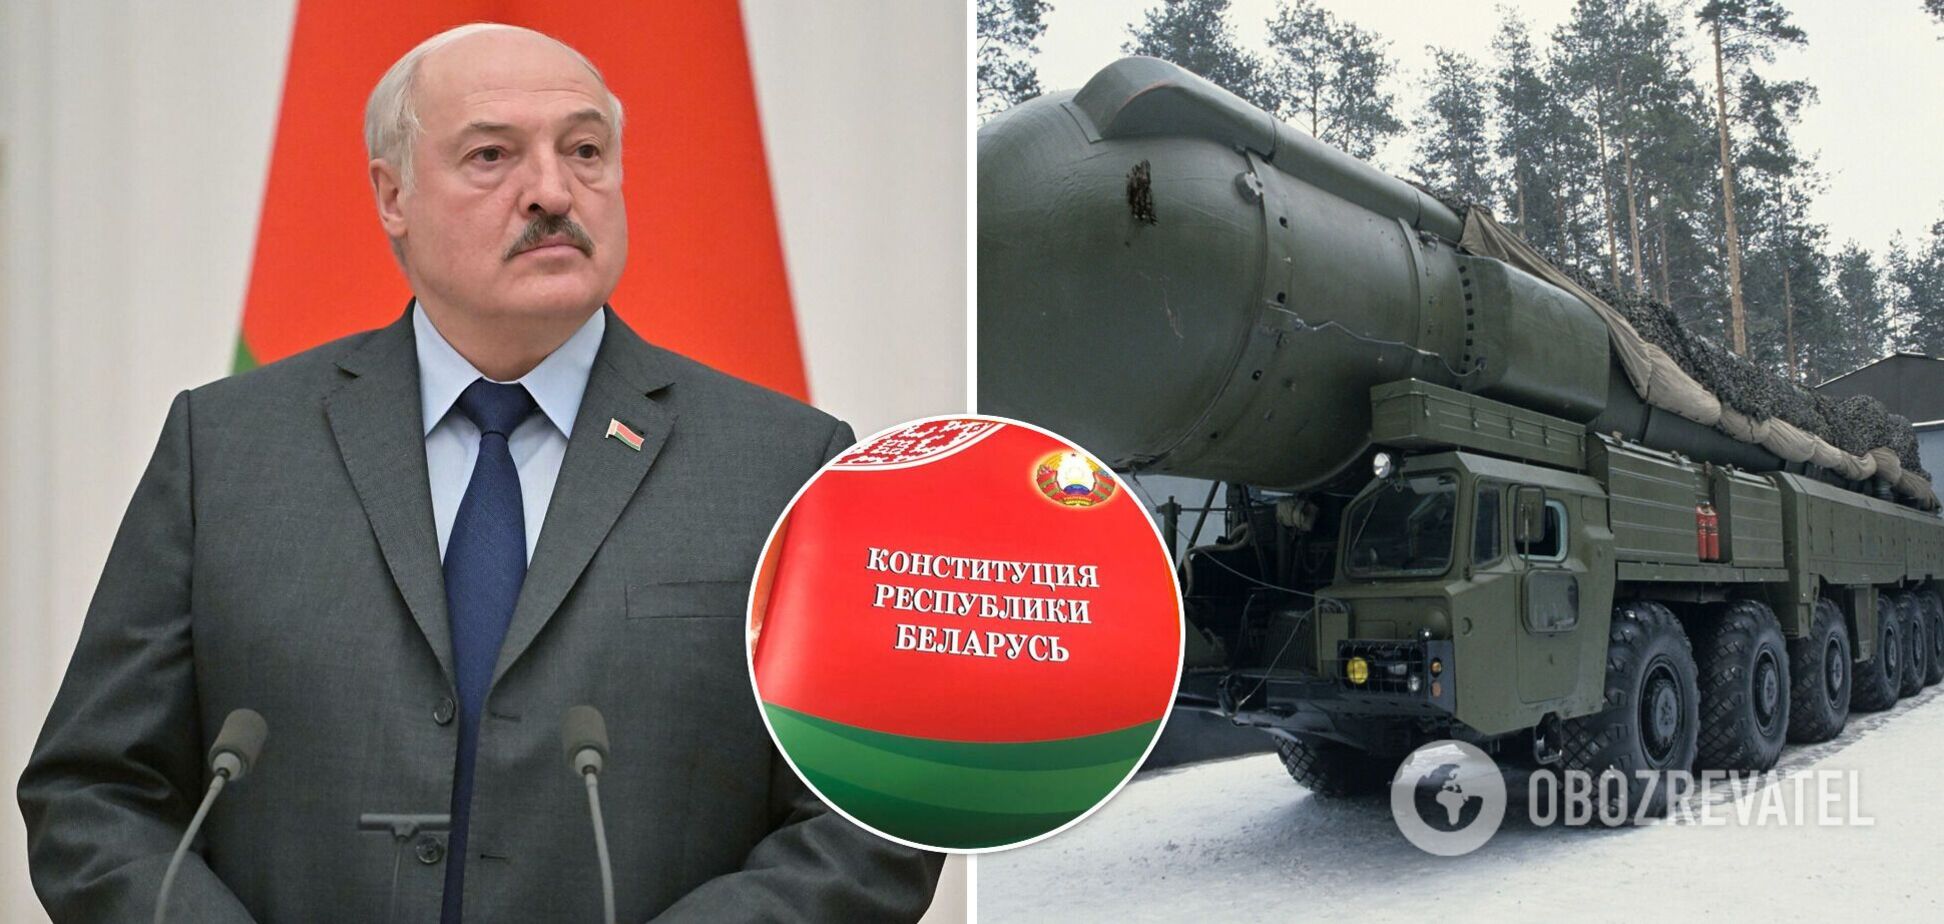 В Білорусі розпочався референдум, який дозволить Лукашенку знову обиратися, а в країні розмістити ядерну зброю